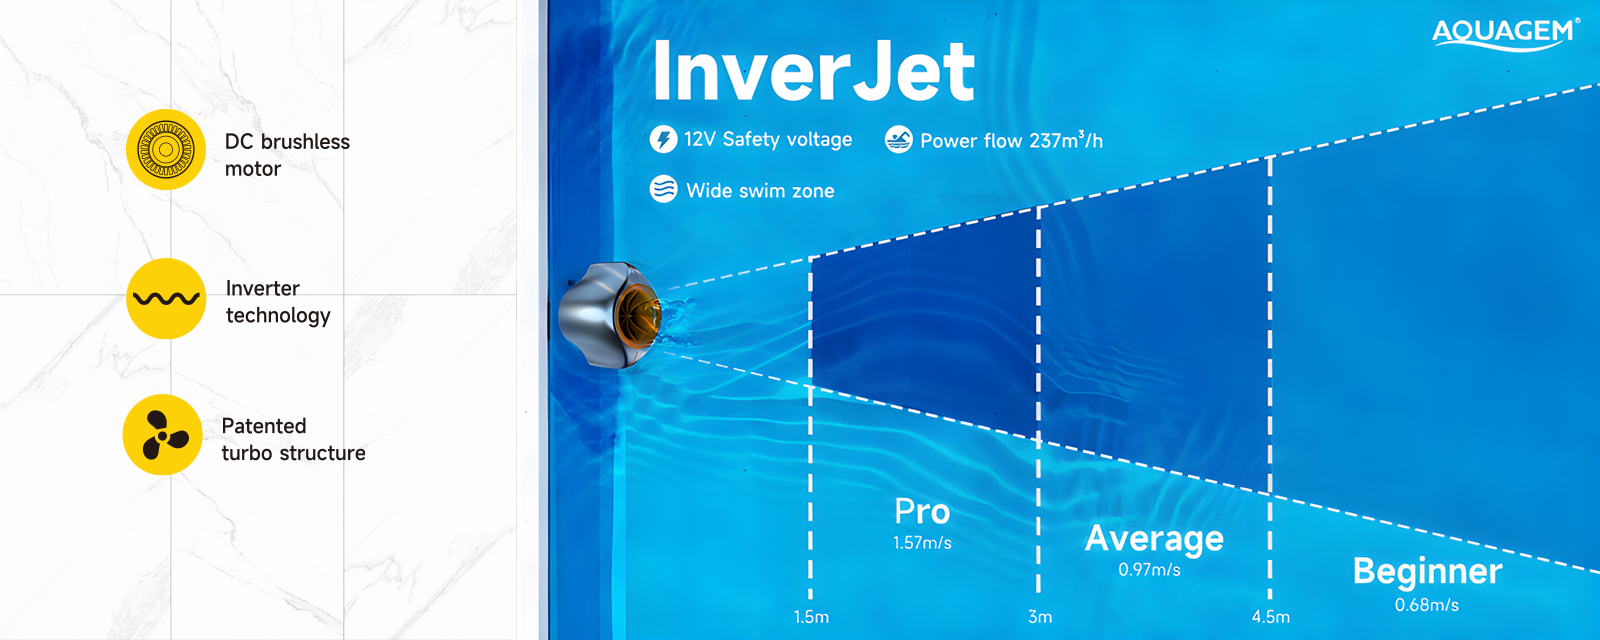 สระว่ายน้ำเครื่องปัจจุบัน inverjet - อัตราการไหลที่ทรงพลัง: สูงสุด 237 ลบ.ม./ชม.